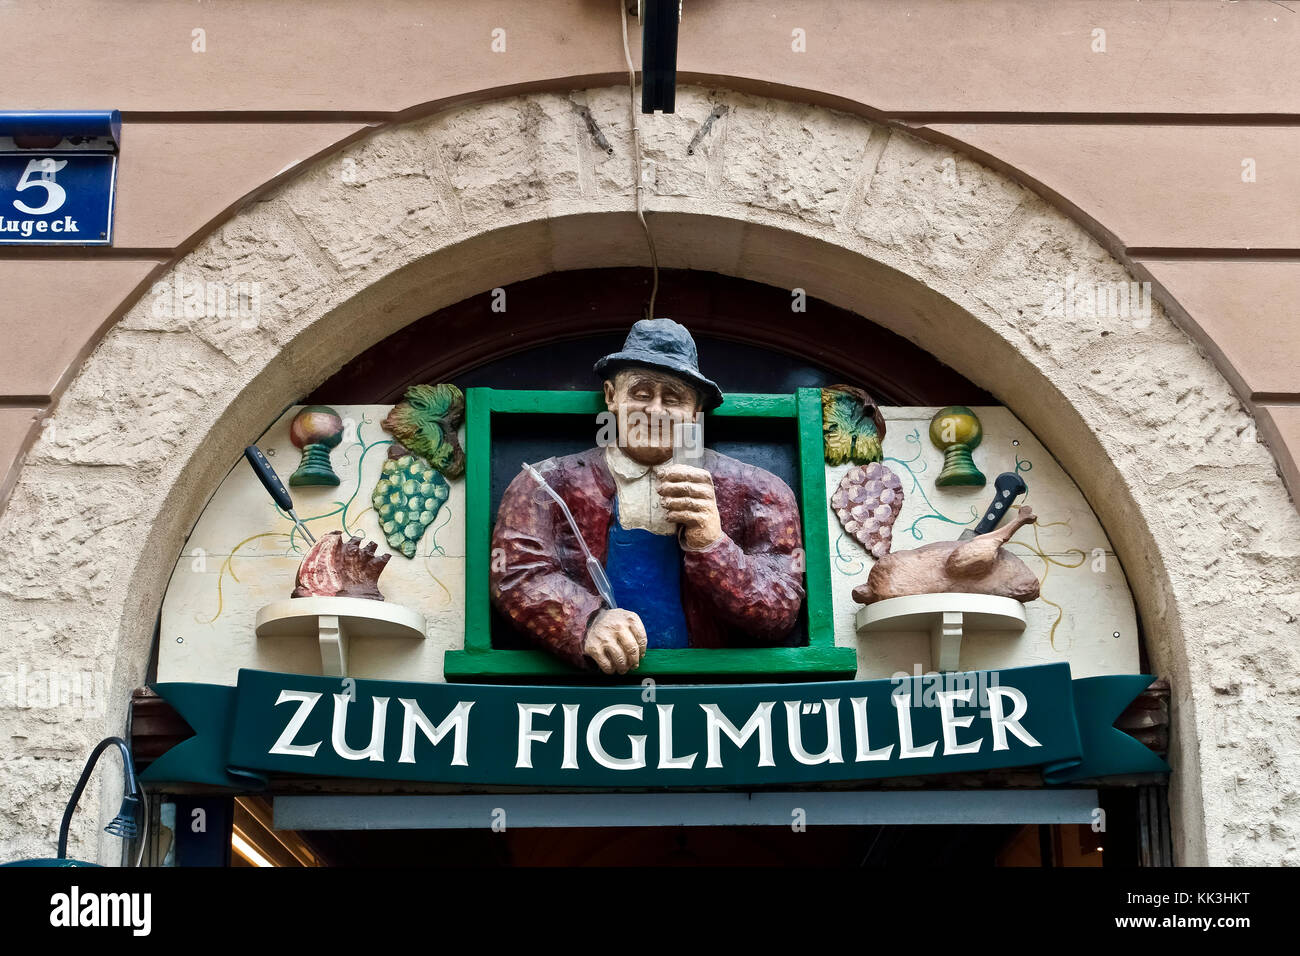 Figlmuller traditionelles Wiener Restaurant. Der berühmteste schnitzel Restaurant in Wien, Österreich. Wand Keramik Werbung Schild über dem Eingang. Stockfoto